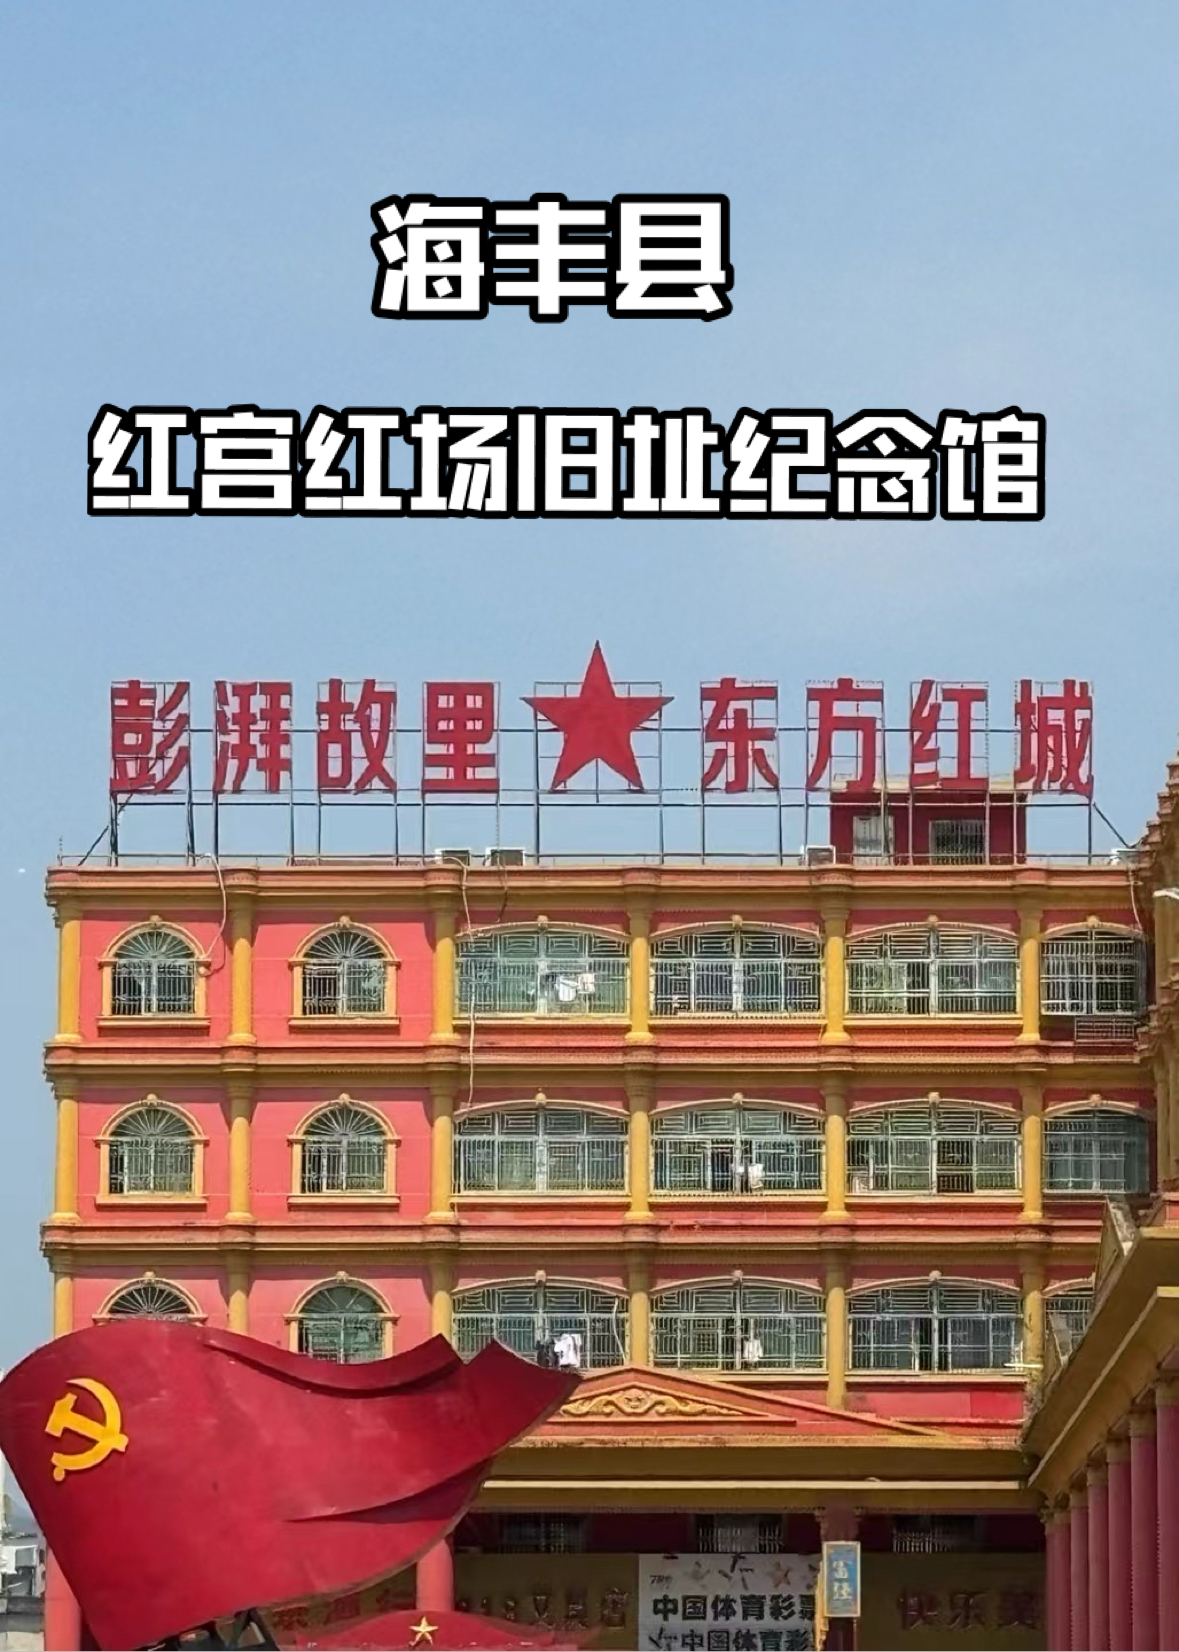 红宫红场旧址纪念馆·革命历史的璀璨明珠